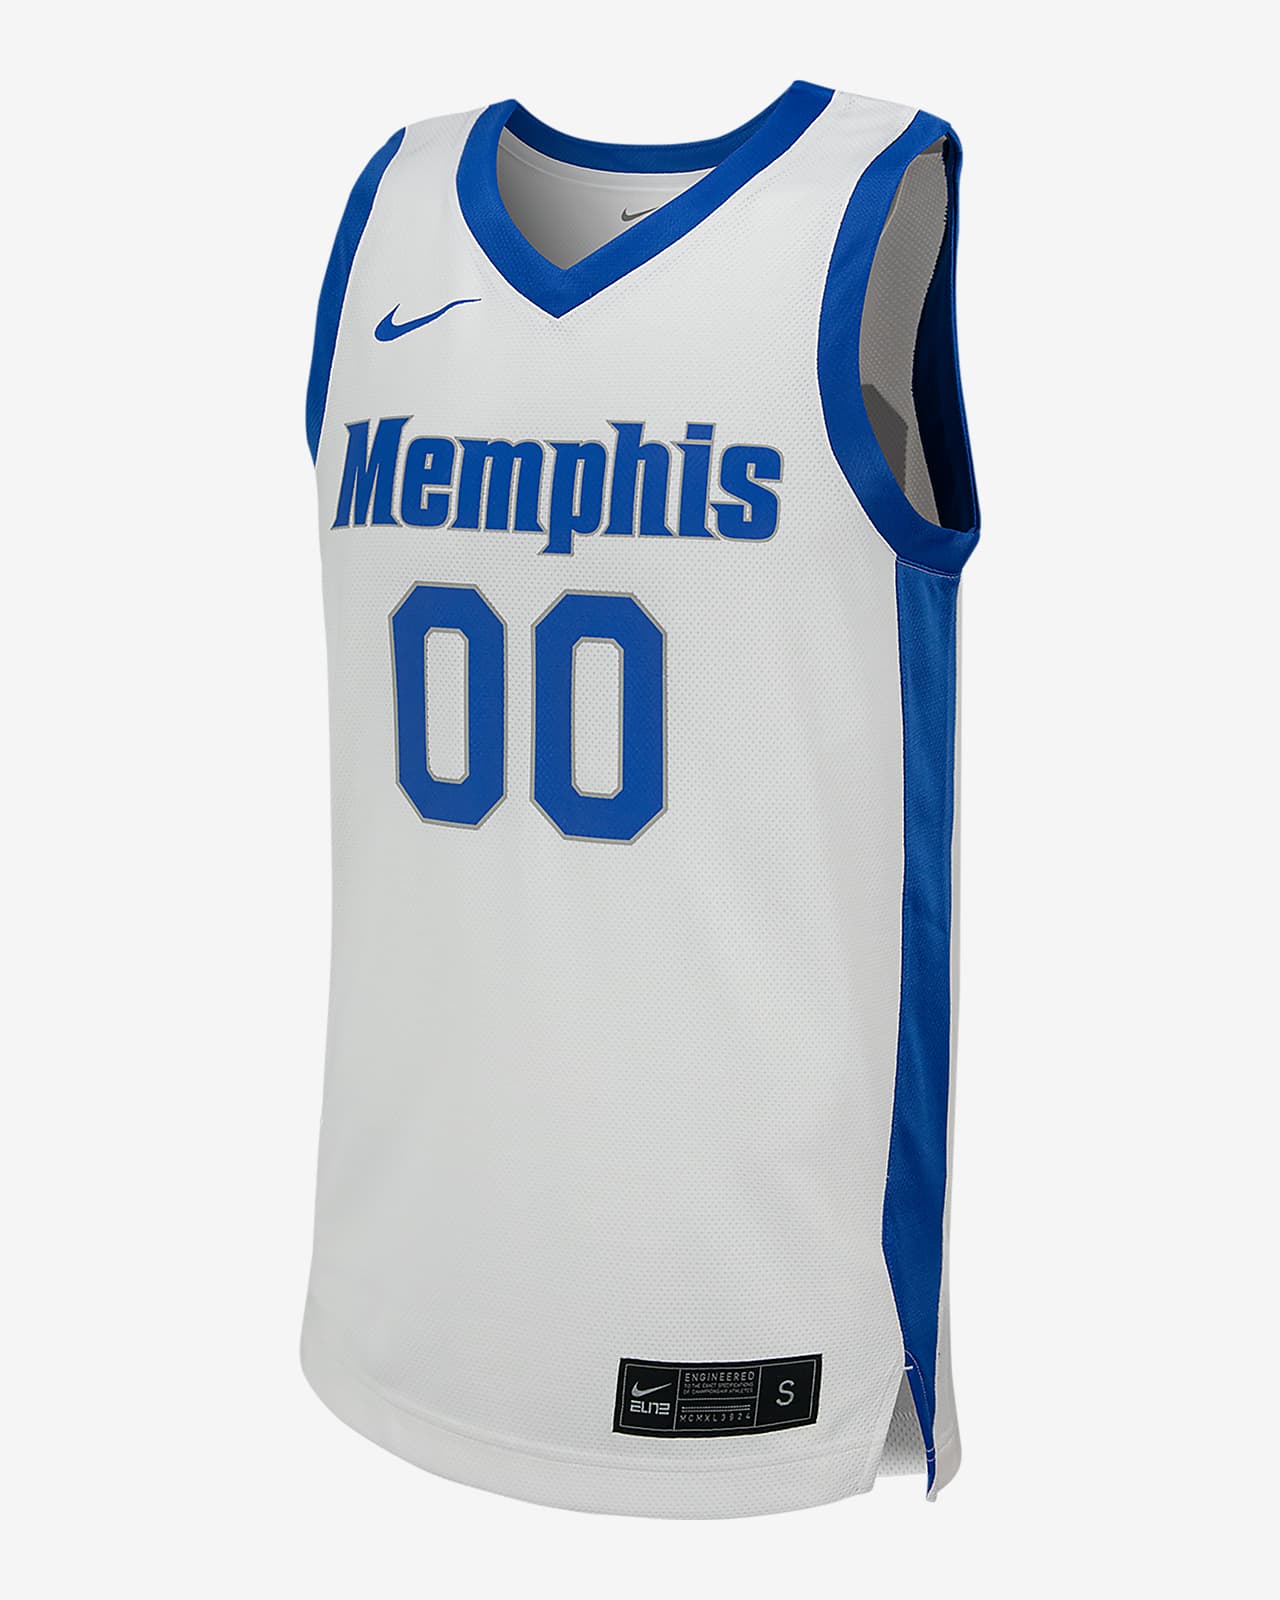 Jersey de básquetbol universitario Nike Replica para hombre Memphis